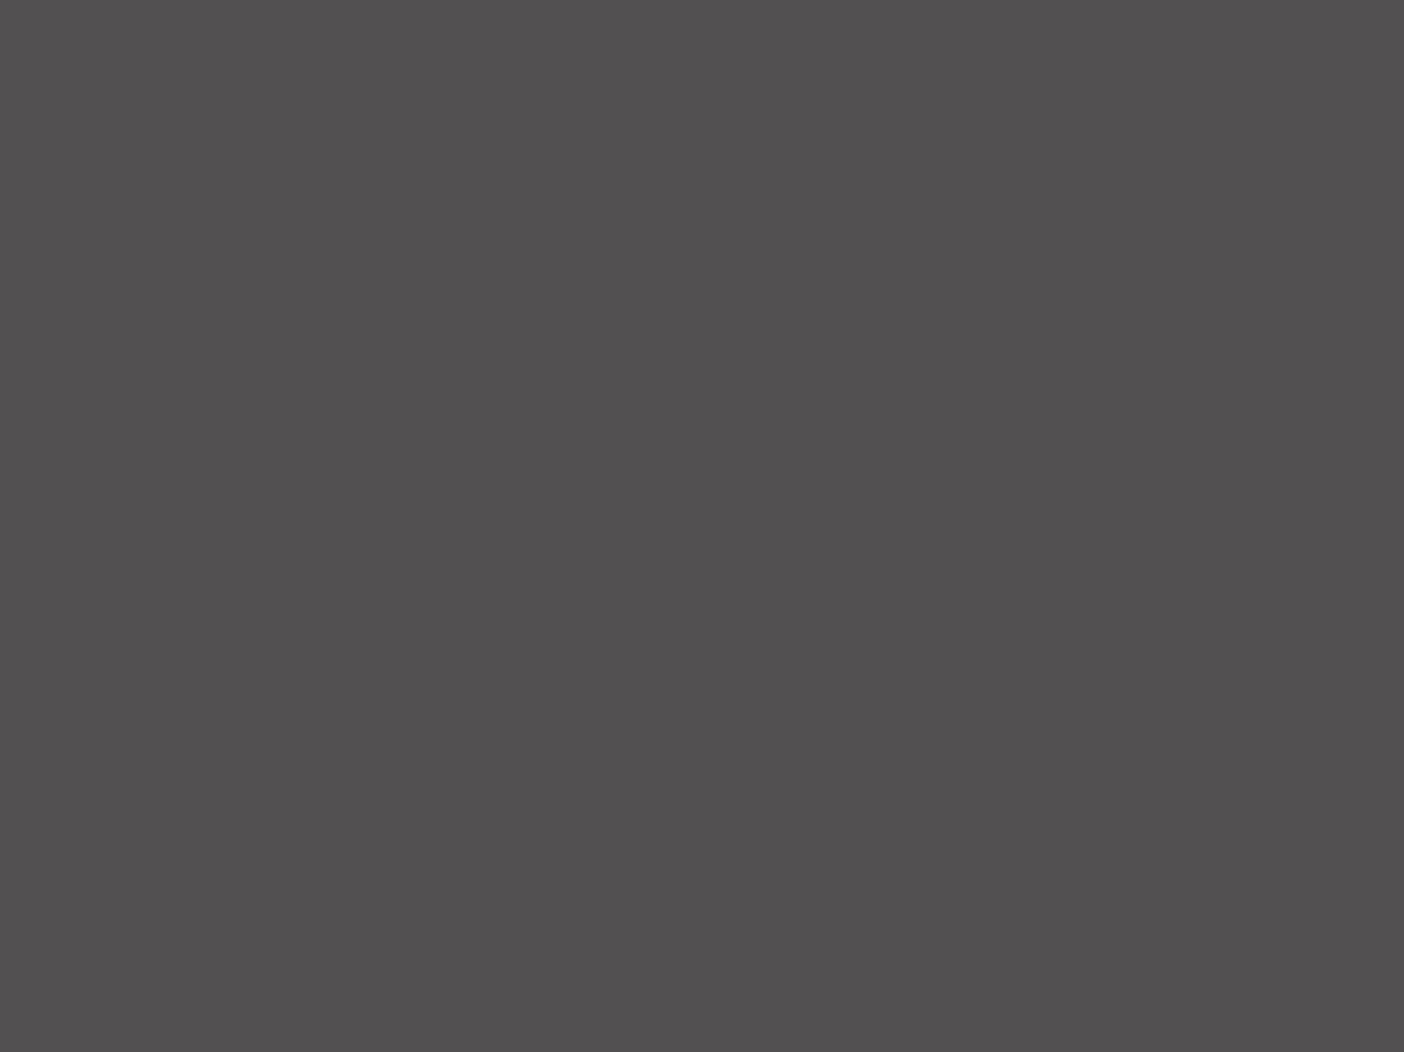 Михаил Врубель. Демон поверженный (фрагмент). 1902. Государственная Третьяковская галерея, Москва